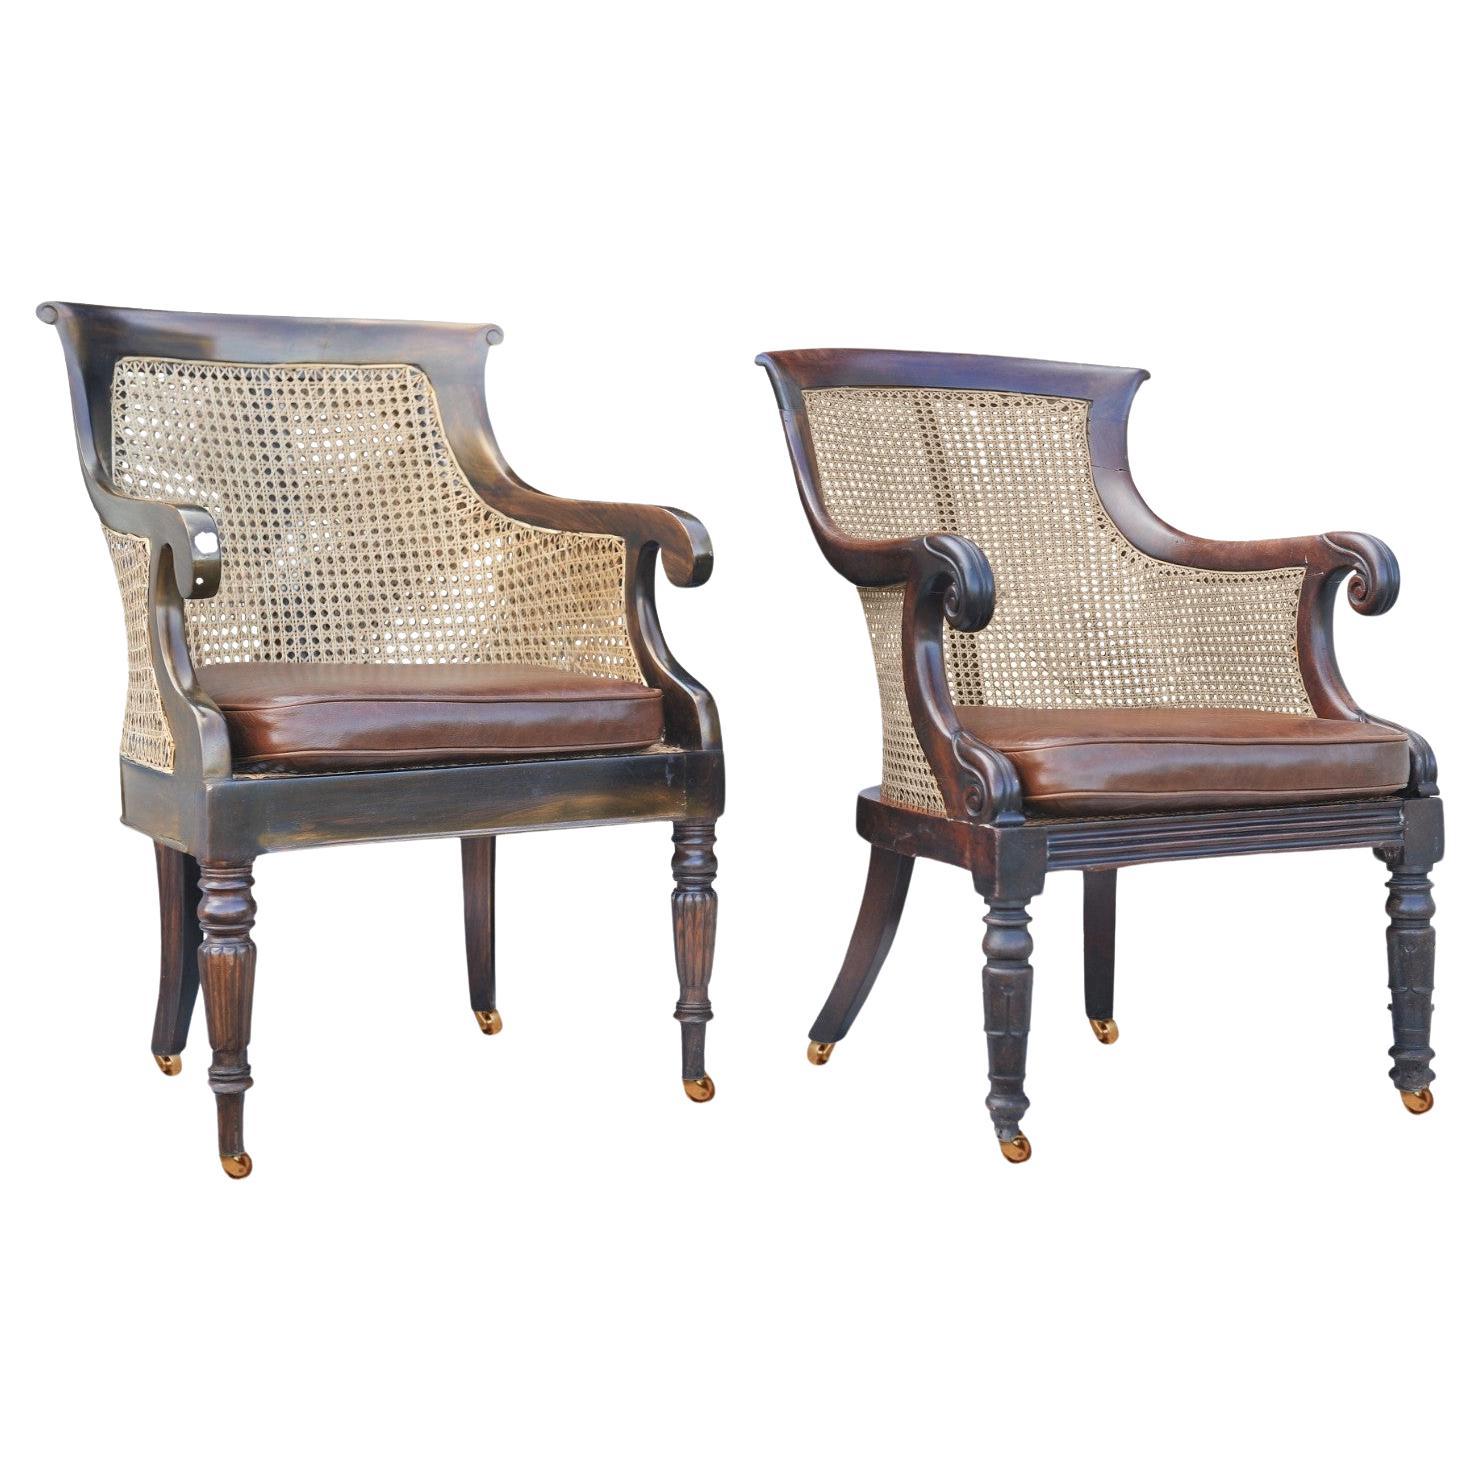 Ein elegantes Paar William IV Regency Hardwood Cane Bergere & Antique Brown Leather Library Armchairs mit Scrolled Arms auf Messing Castors

Die Stühle sind ein Beinahe-Paar, das sich leicht unterscheidet, aber nicht zusammenpasst.

Stock ist in